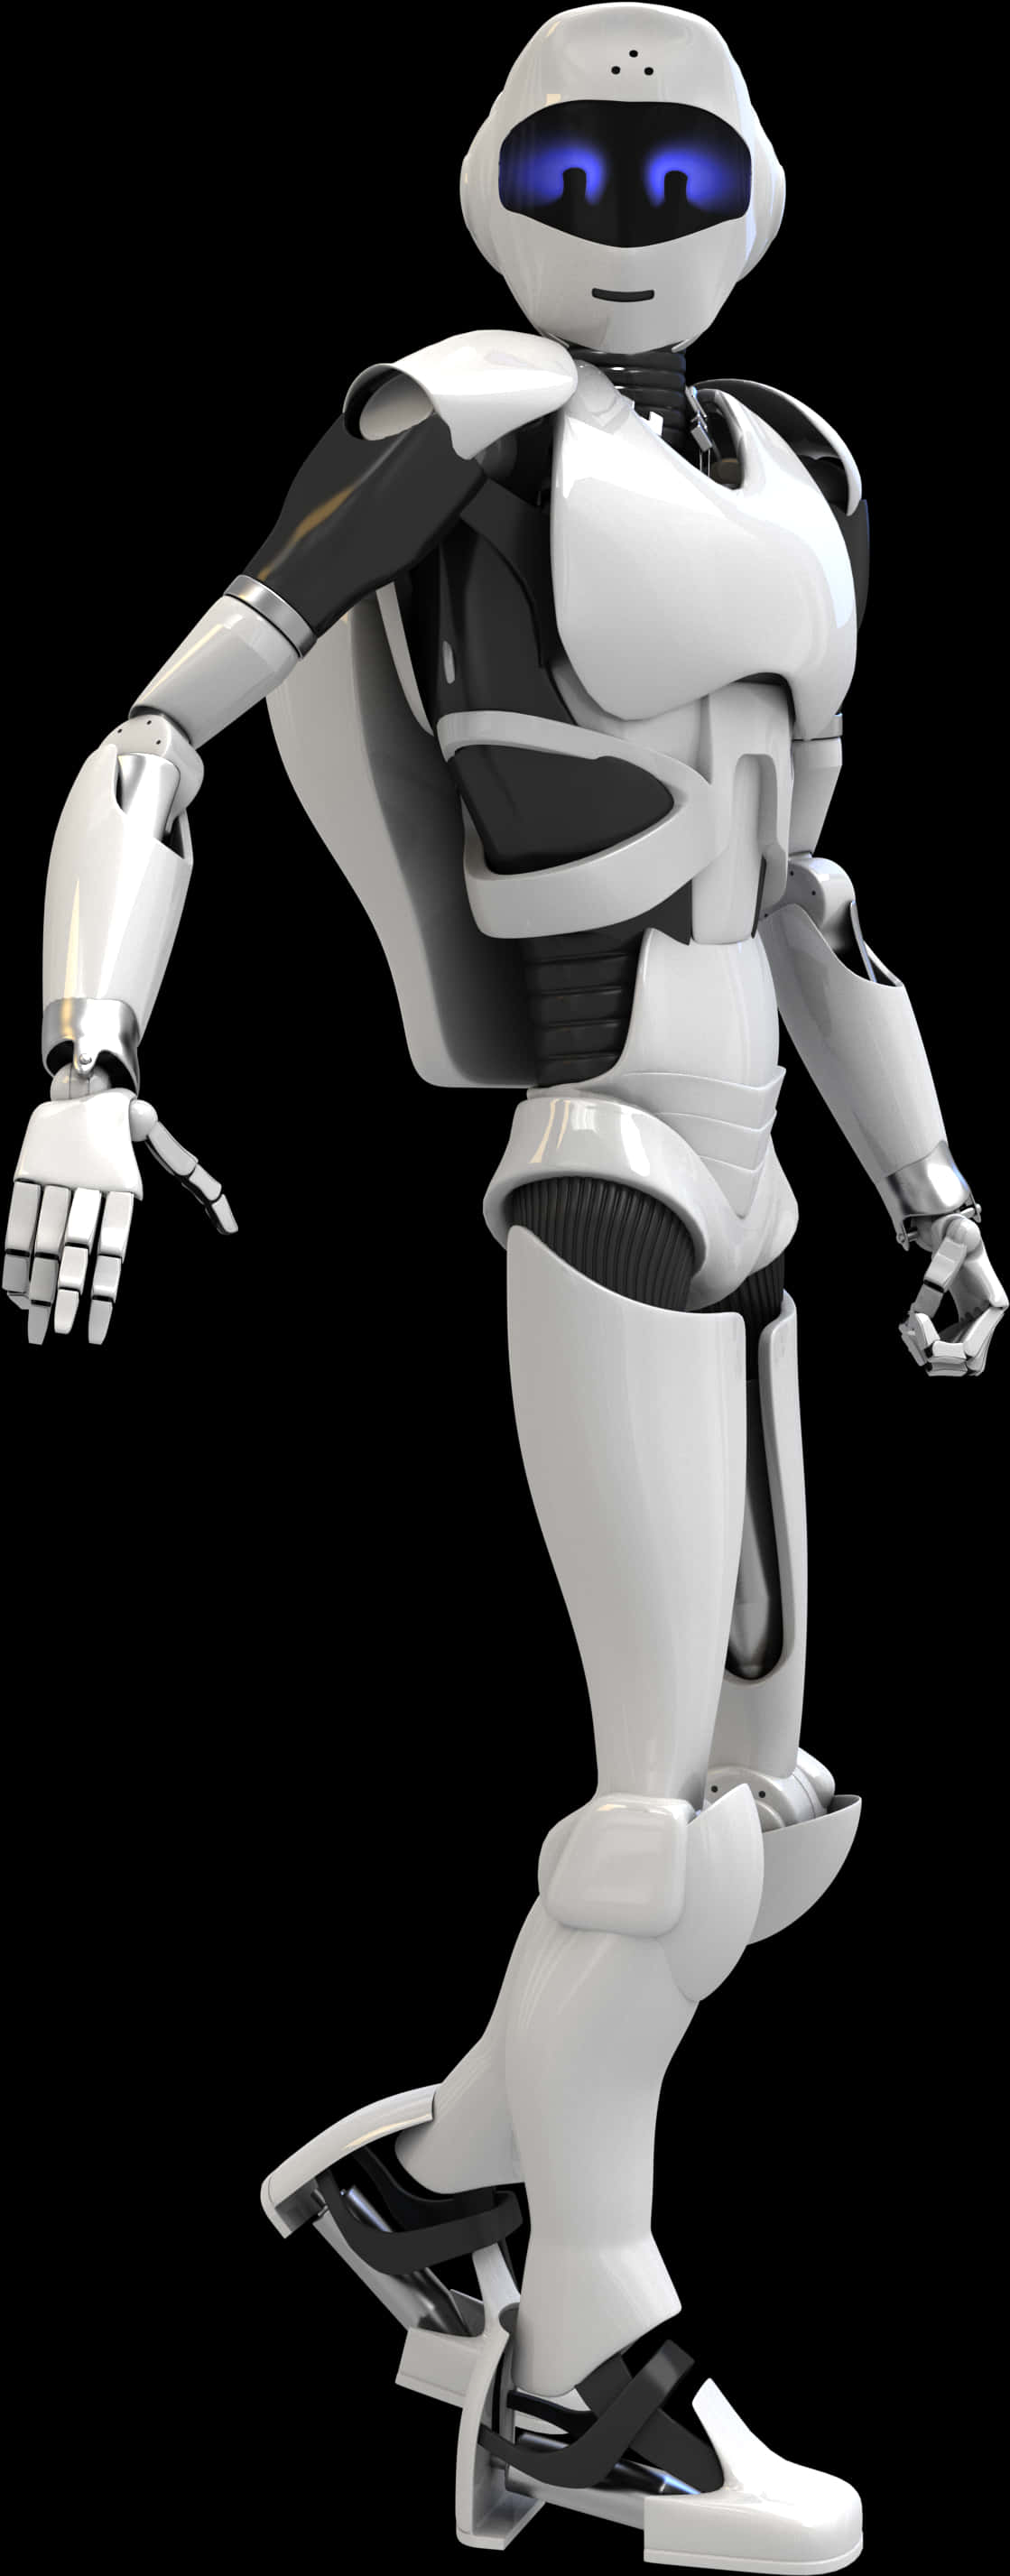 Futuristic Humanoid Robot PNG